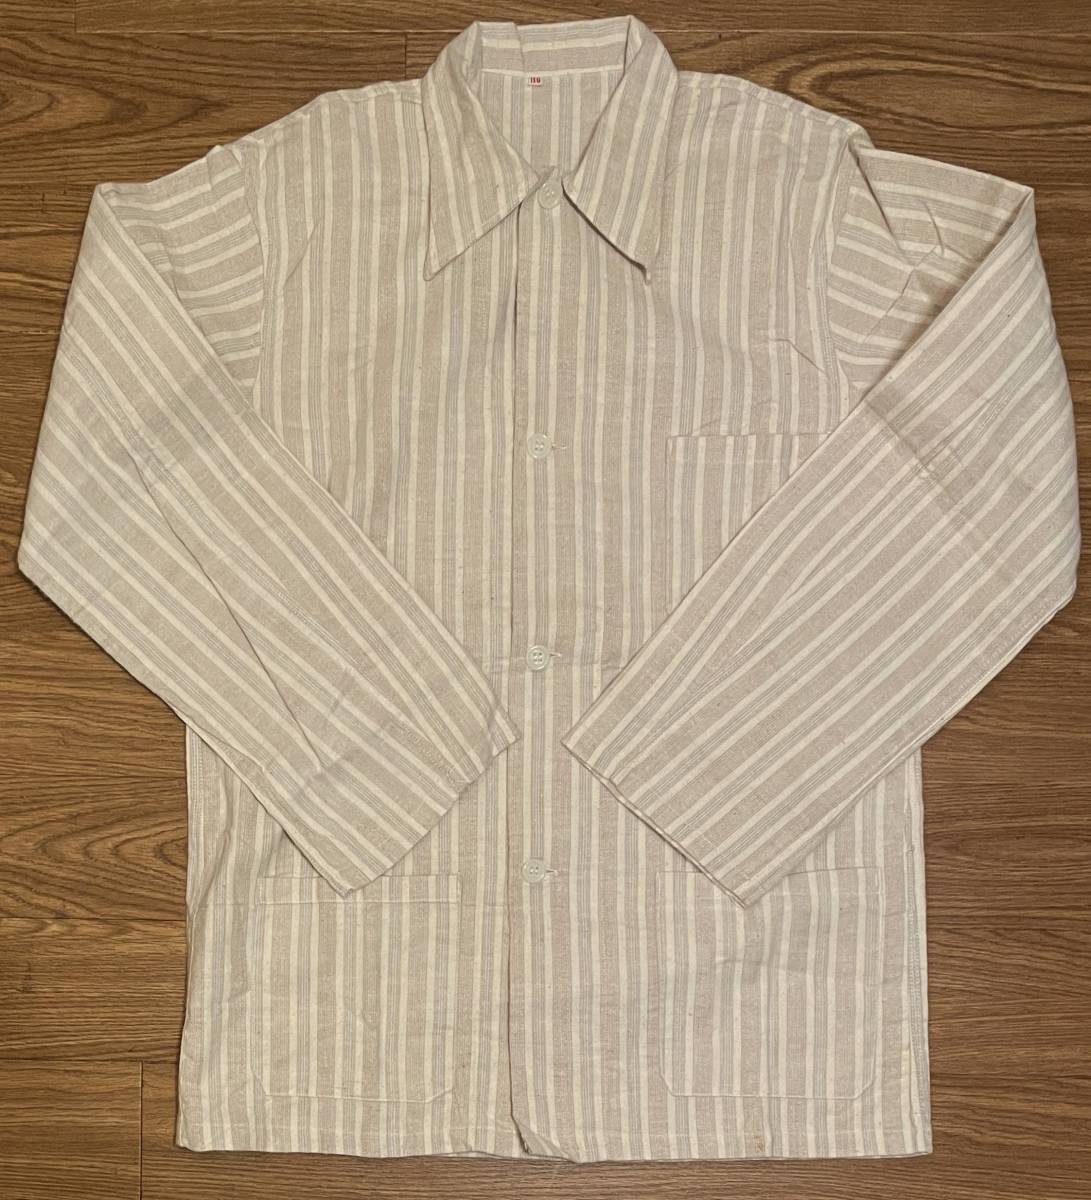 デッドストック60sユーロ実物ビンテージ軍パジャマシャツジャケット/カバーオールMストライプ柄ネル起毛コットン60年代デッド欧ミリタリー